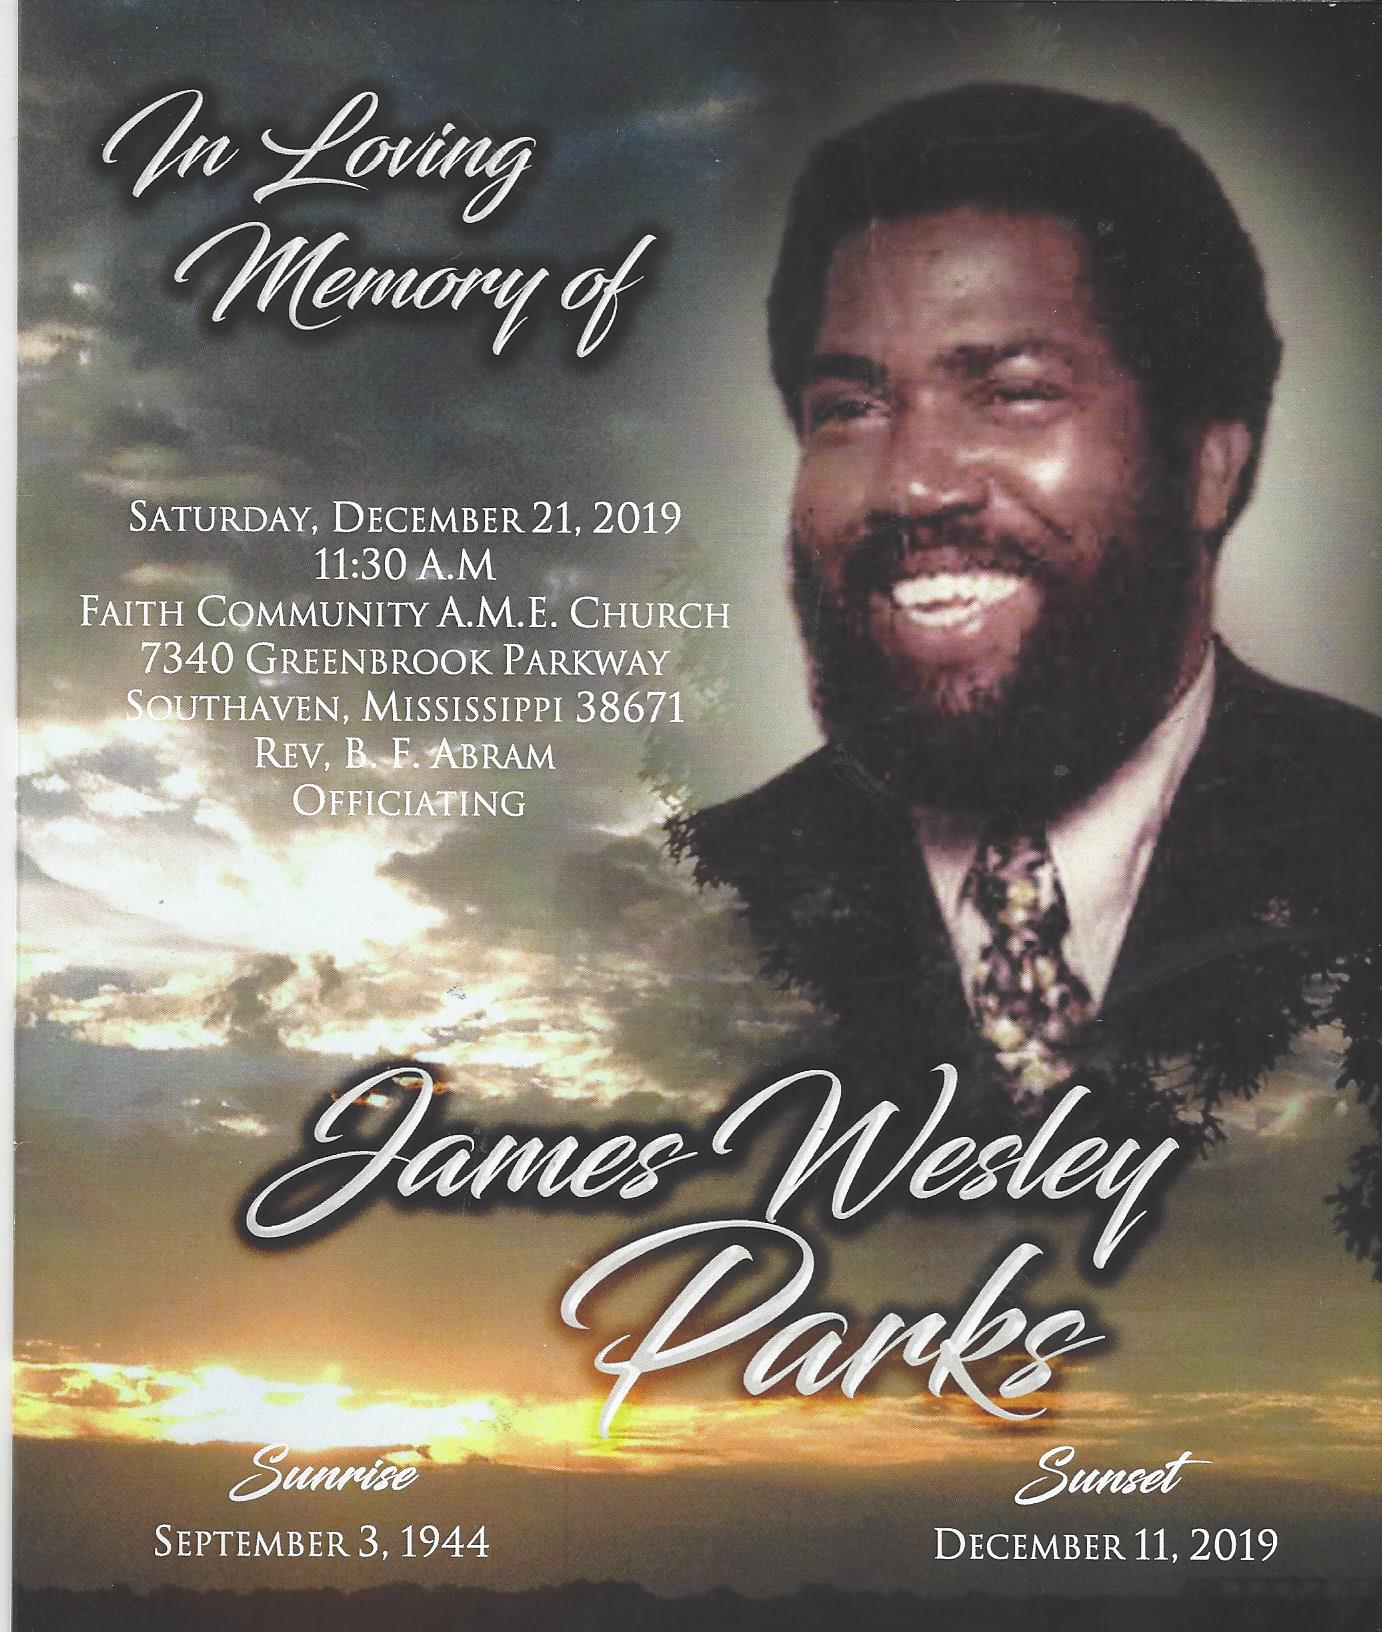 James Wesley Parks